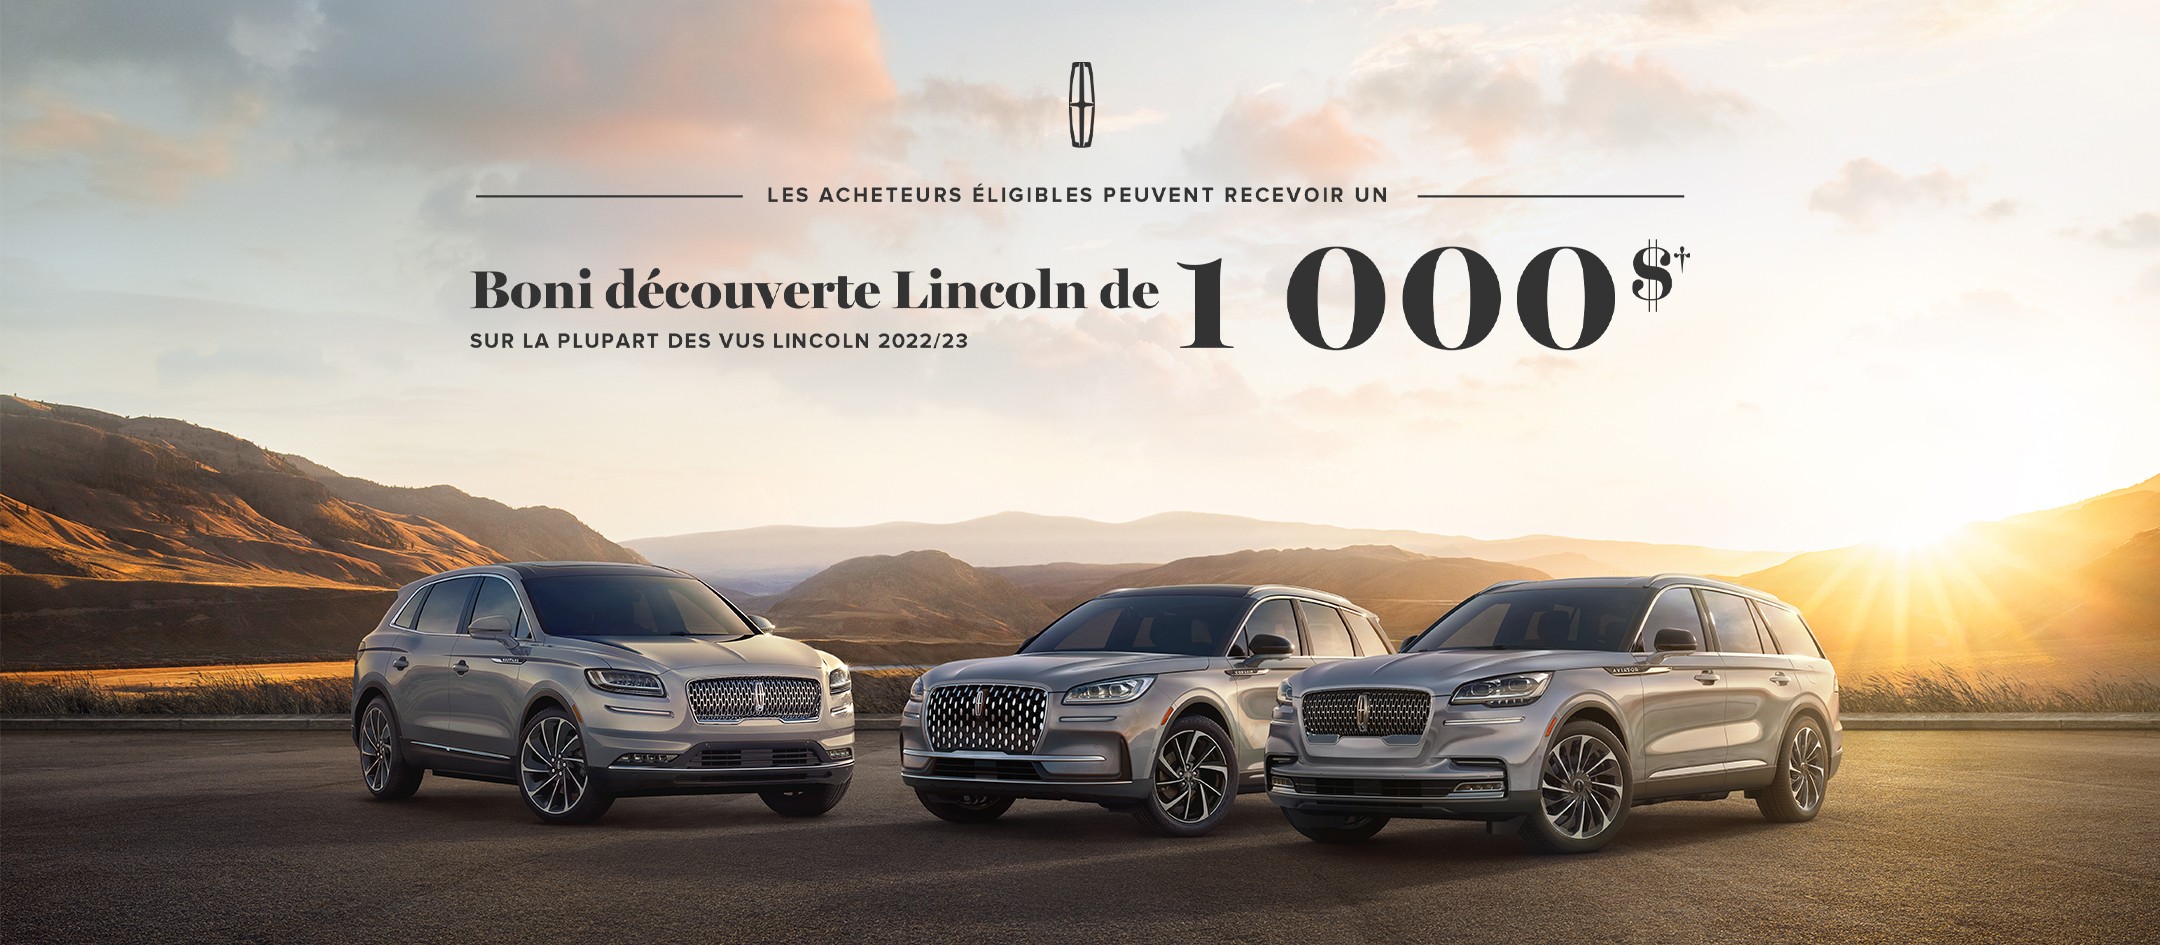 Les acheteurs éligibles peuvent recevoir un boni découverte Lincoln de 1 000 $ sur la plupart des VUS Lincoln 2022/23